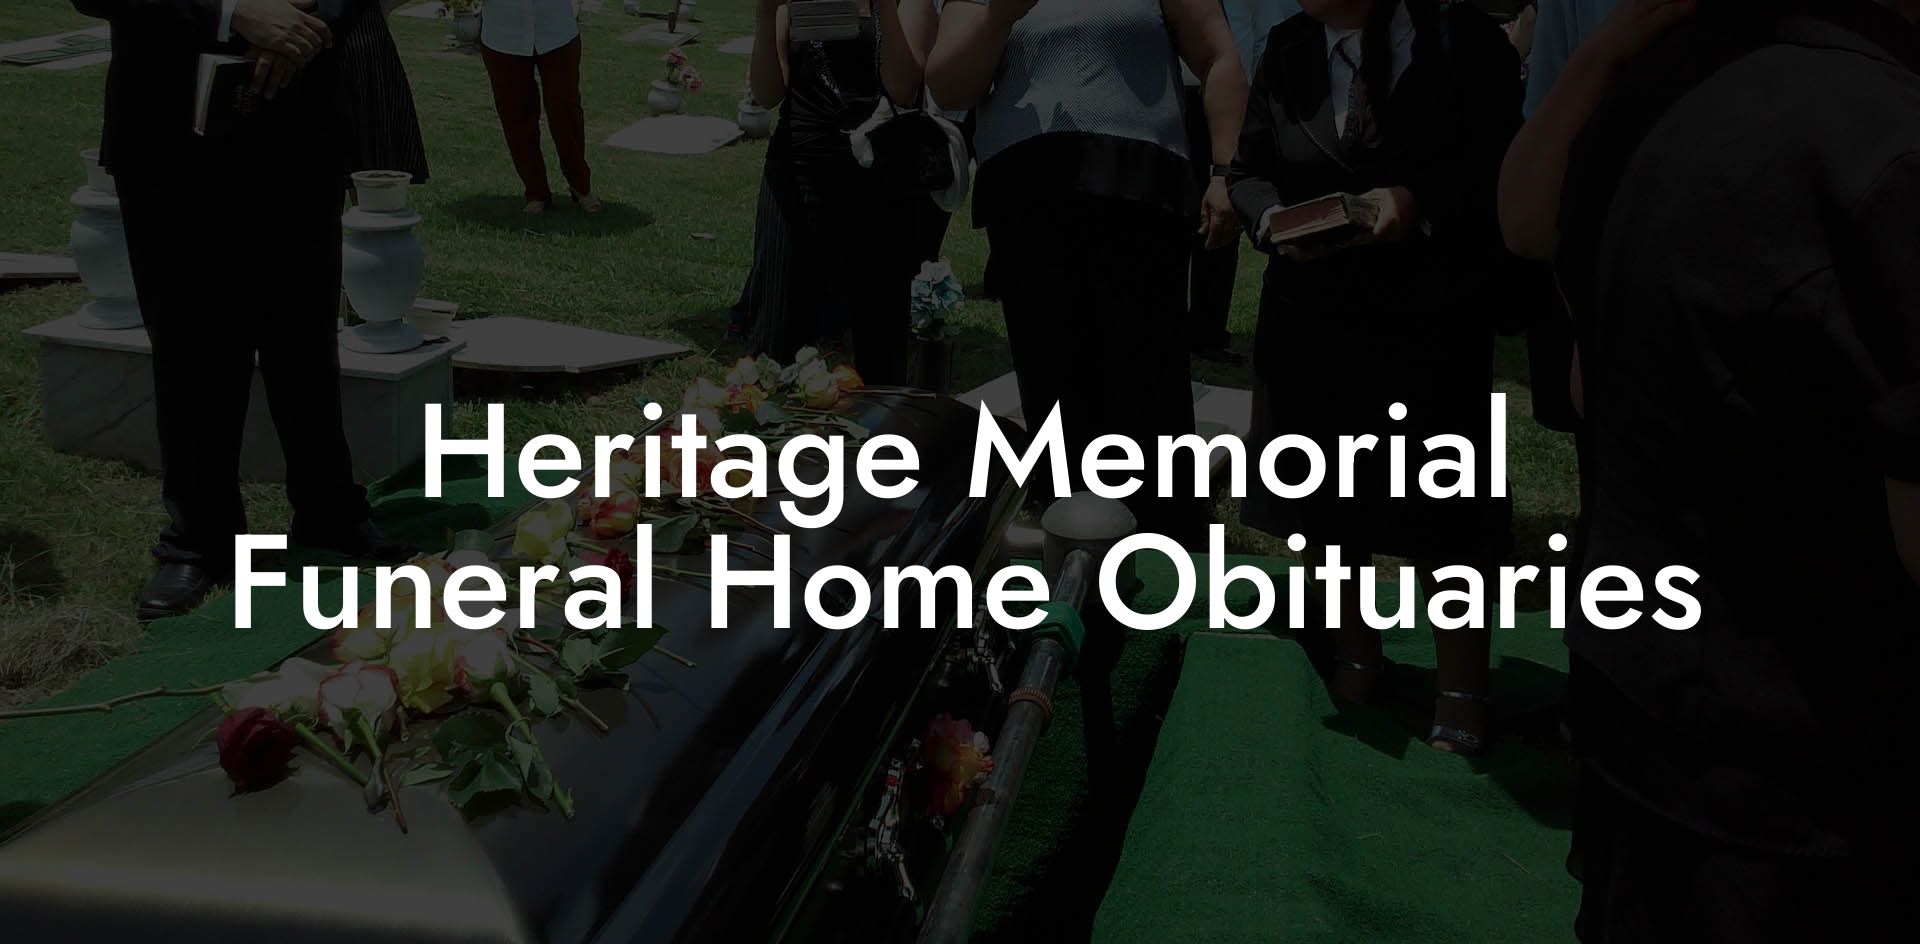 Heritage Memorial Funeral Home Obituaries